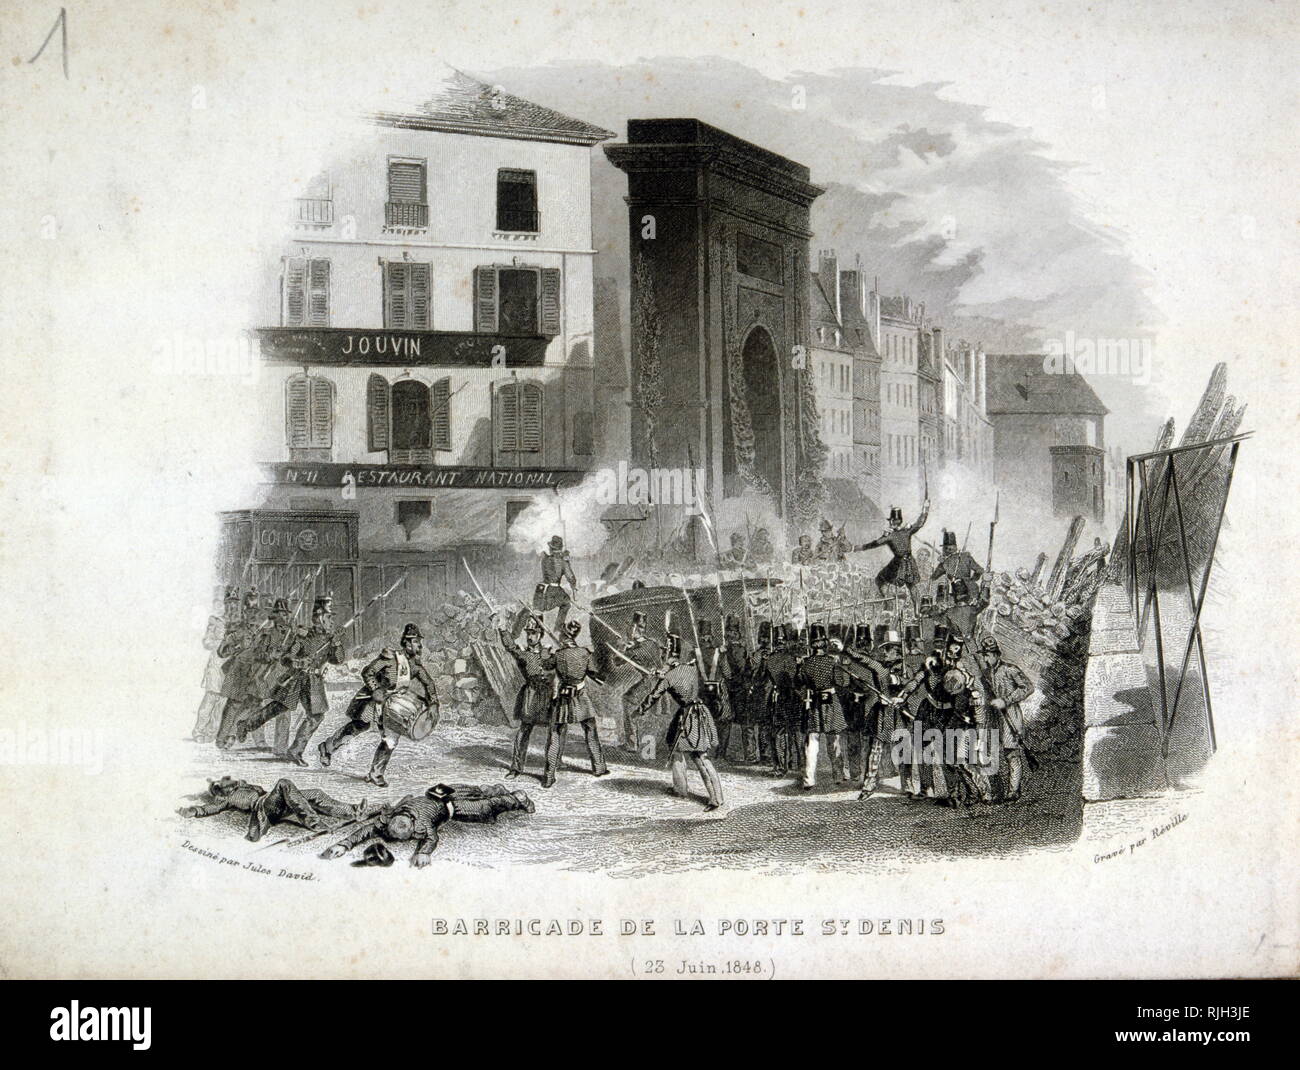 Grabado mostrando las barricadas levantadas en la Porte Saint Denis, de París durante la Revolución de 1848 Foto de stock